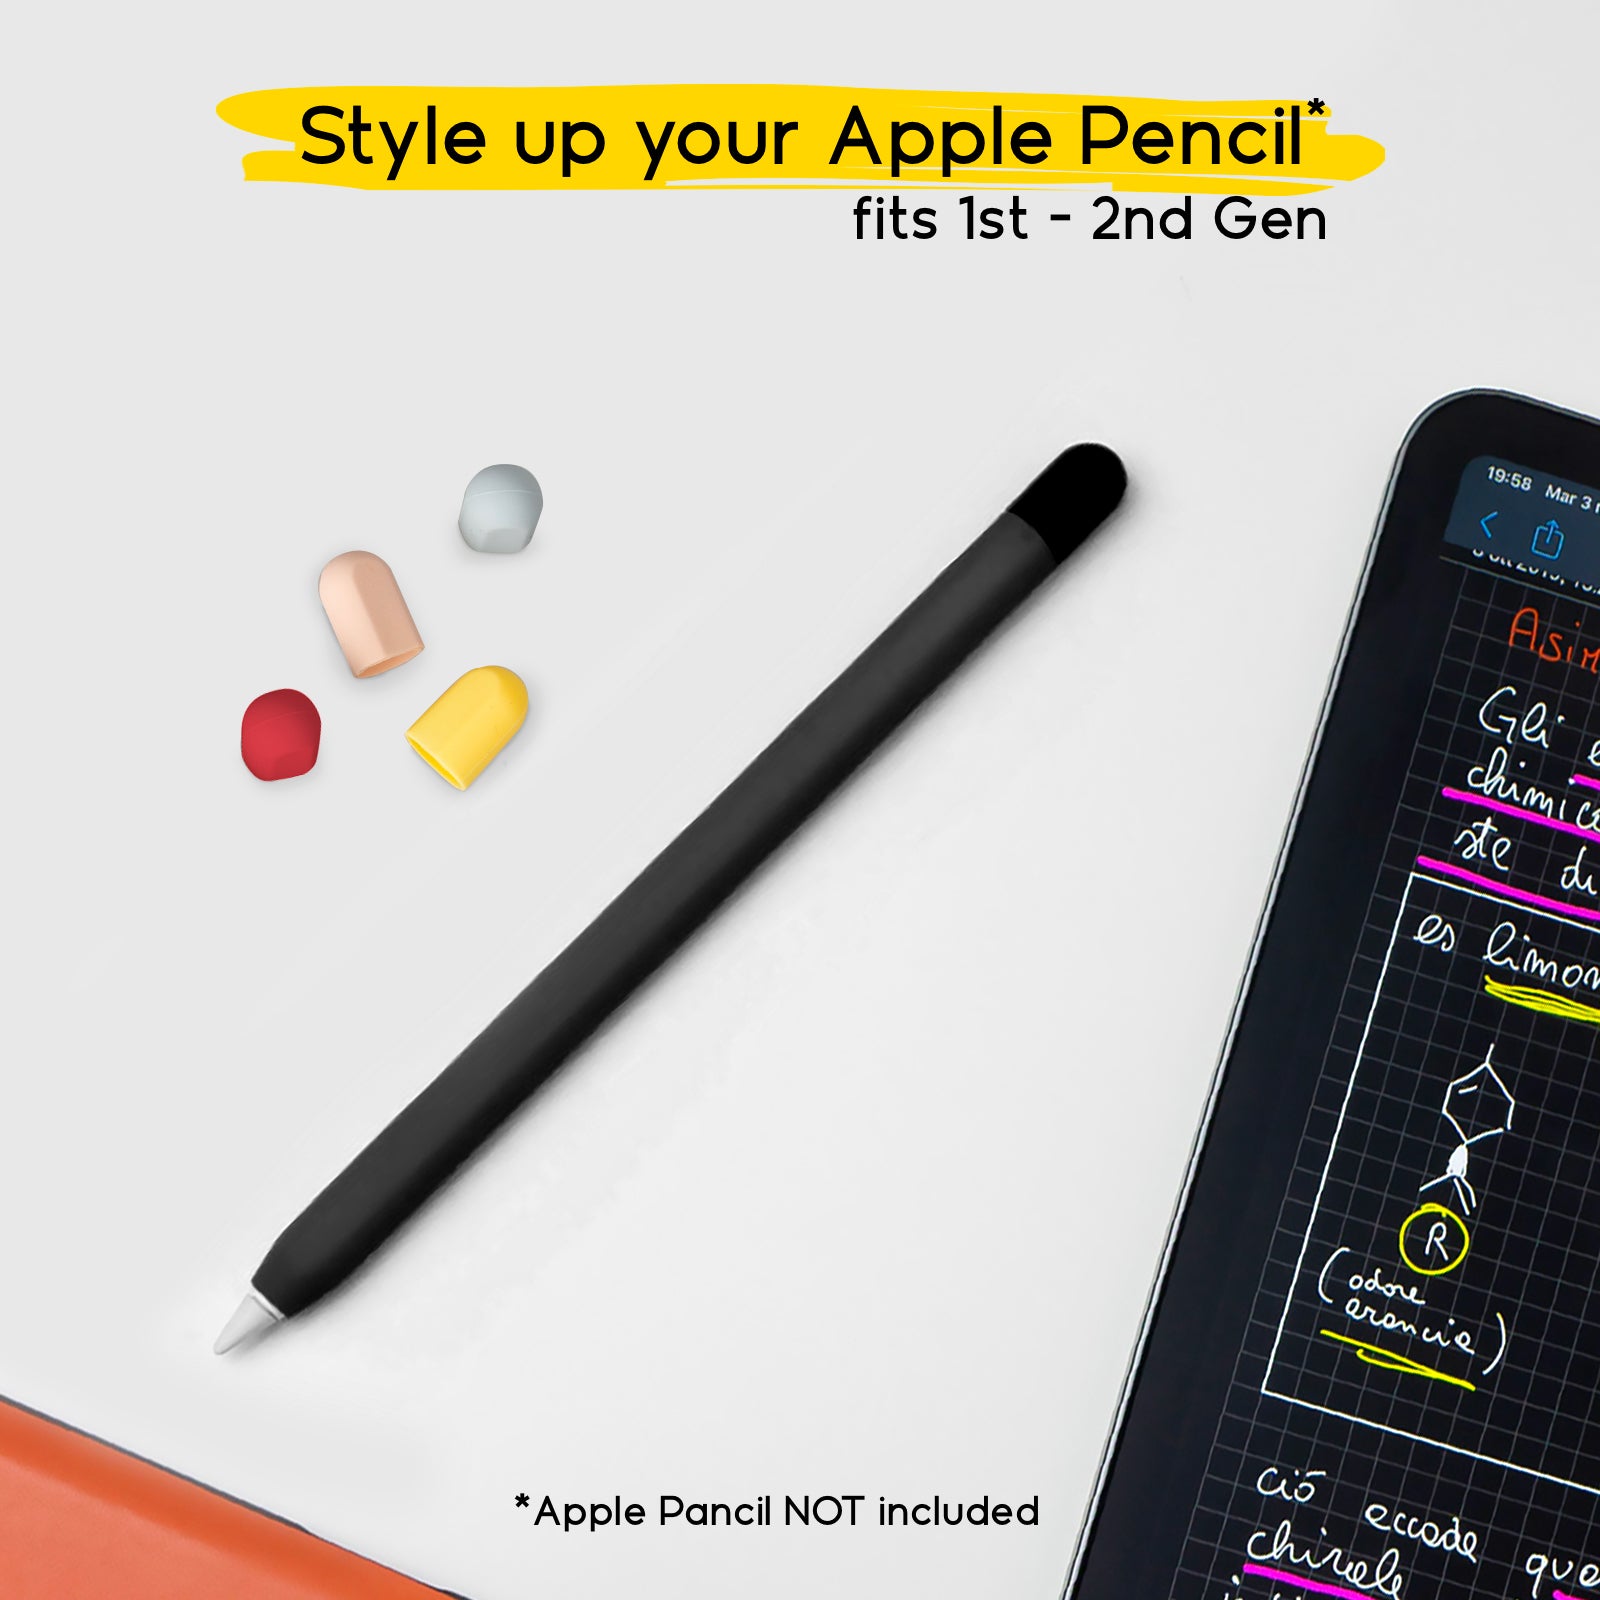 Custodia skin nera per Apple Pencil di 1° e 2° generazione con 5 cap colorati
